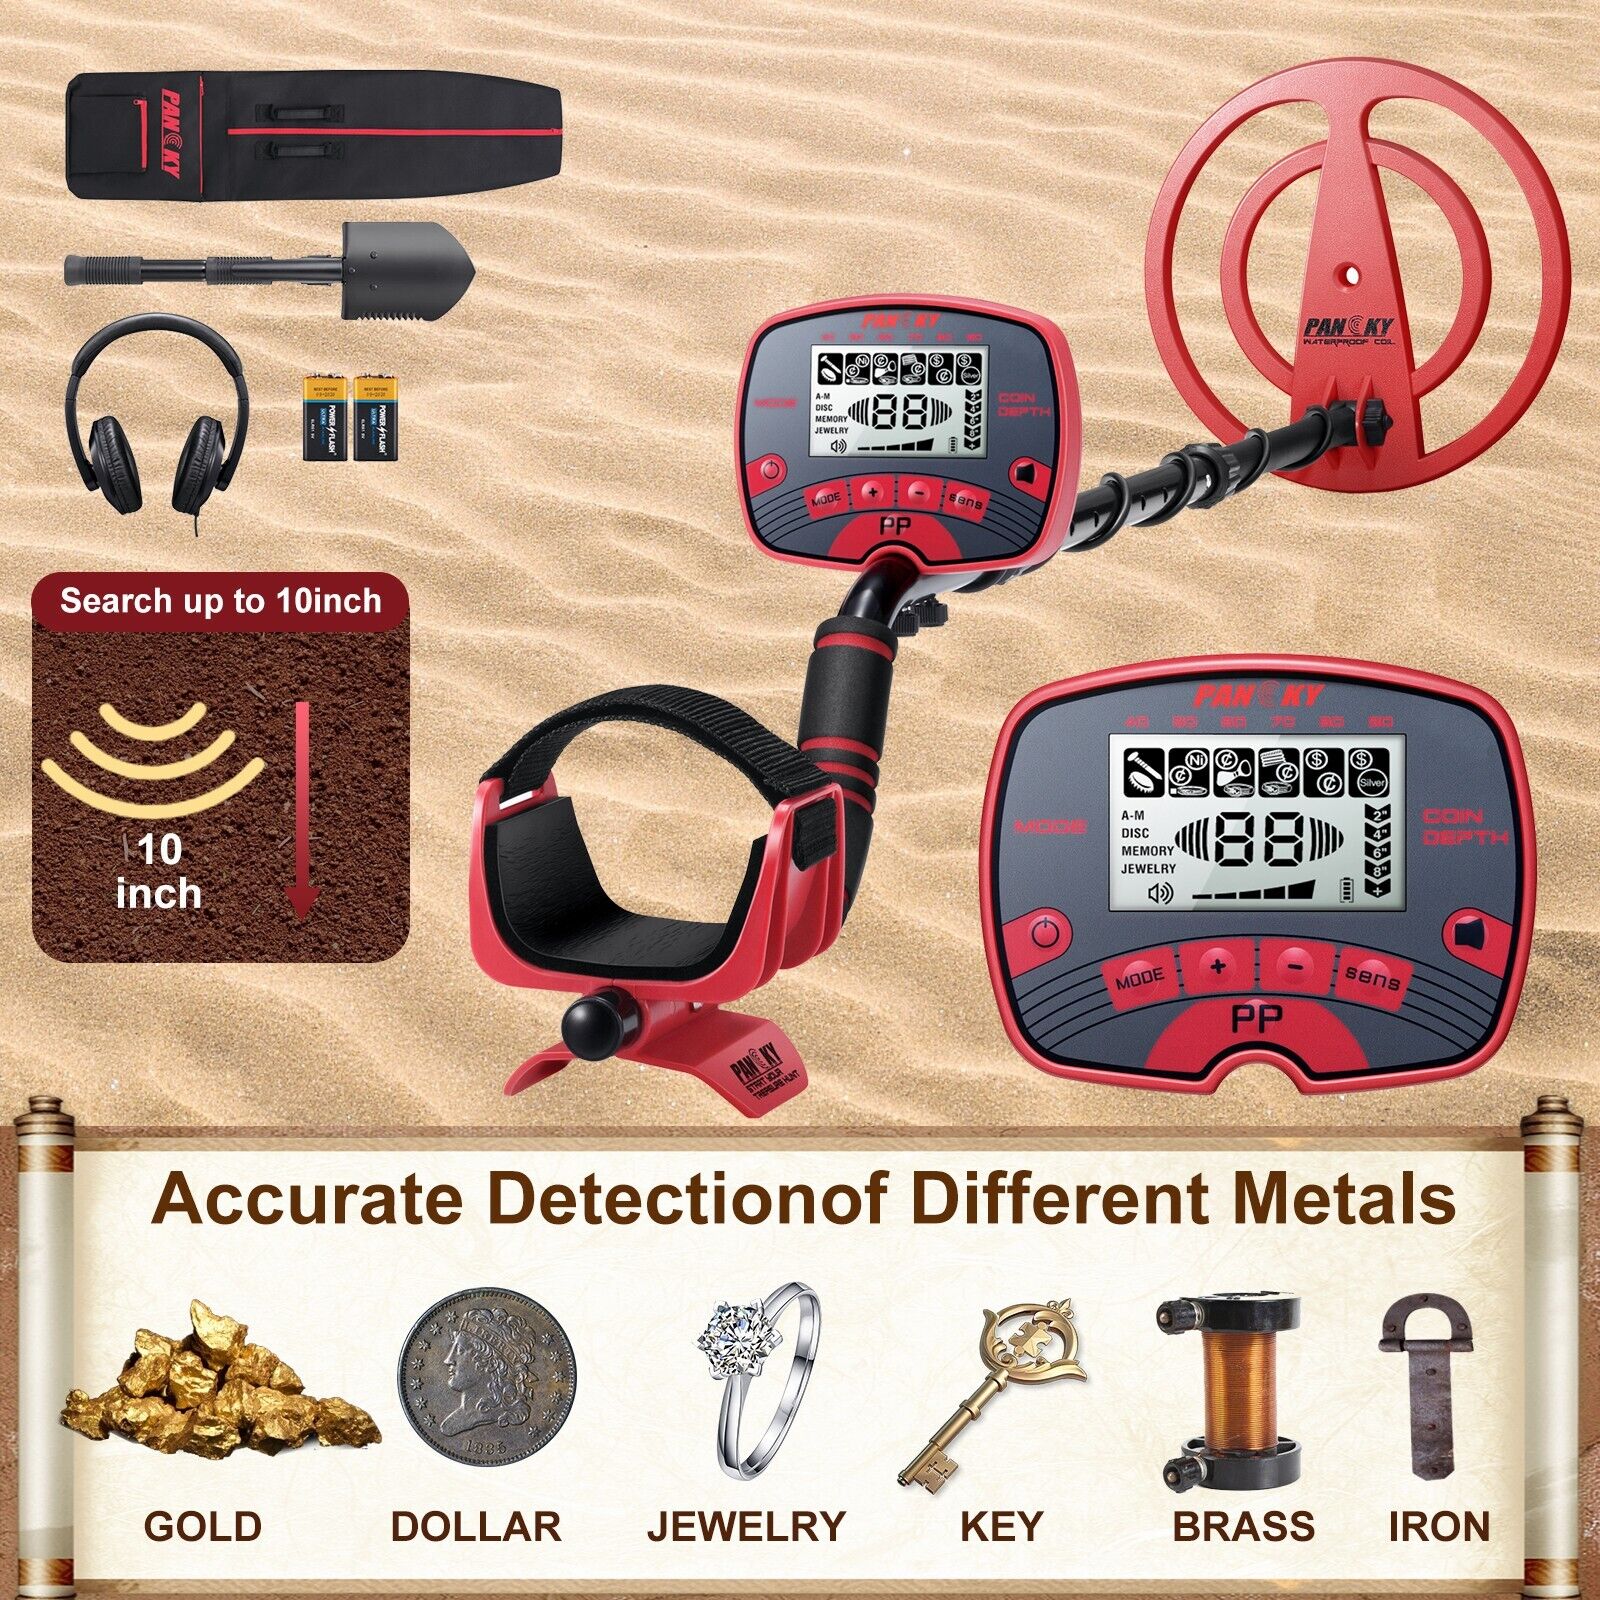 PANCKY Metal Detectors for Adults Waterproof - 10